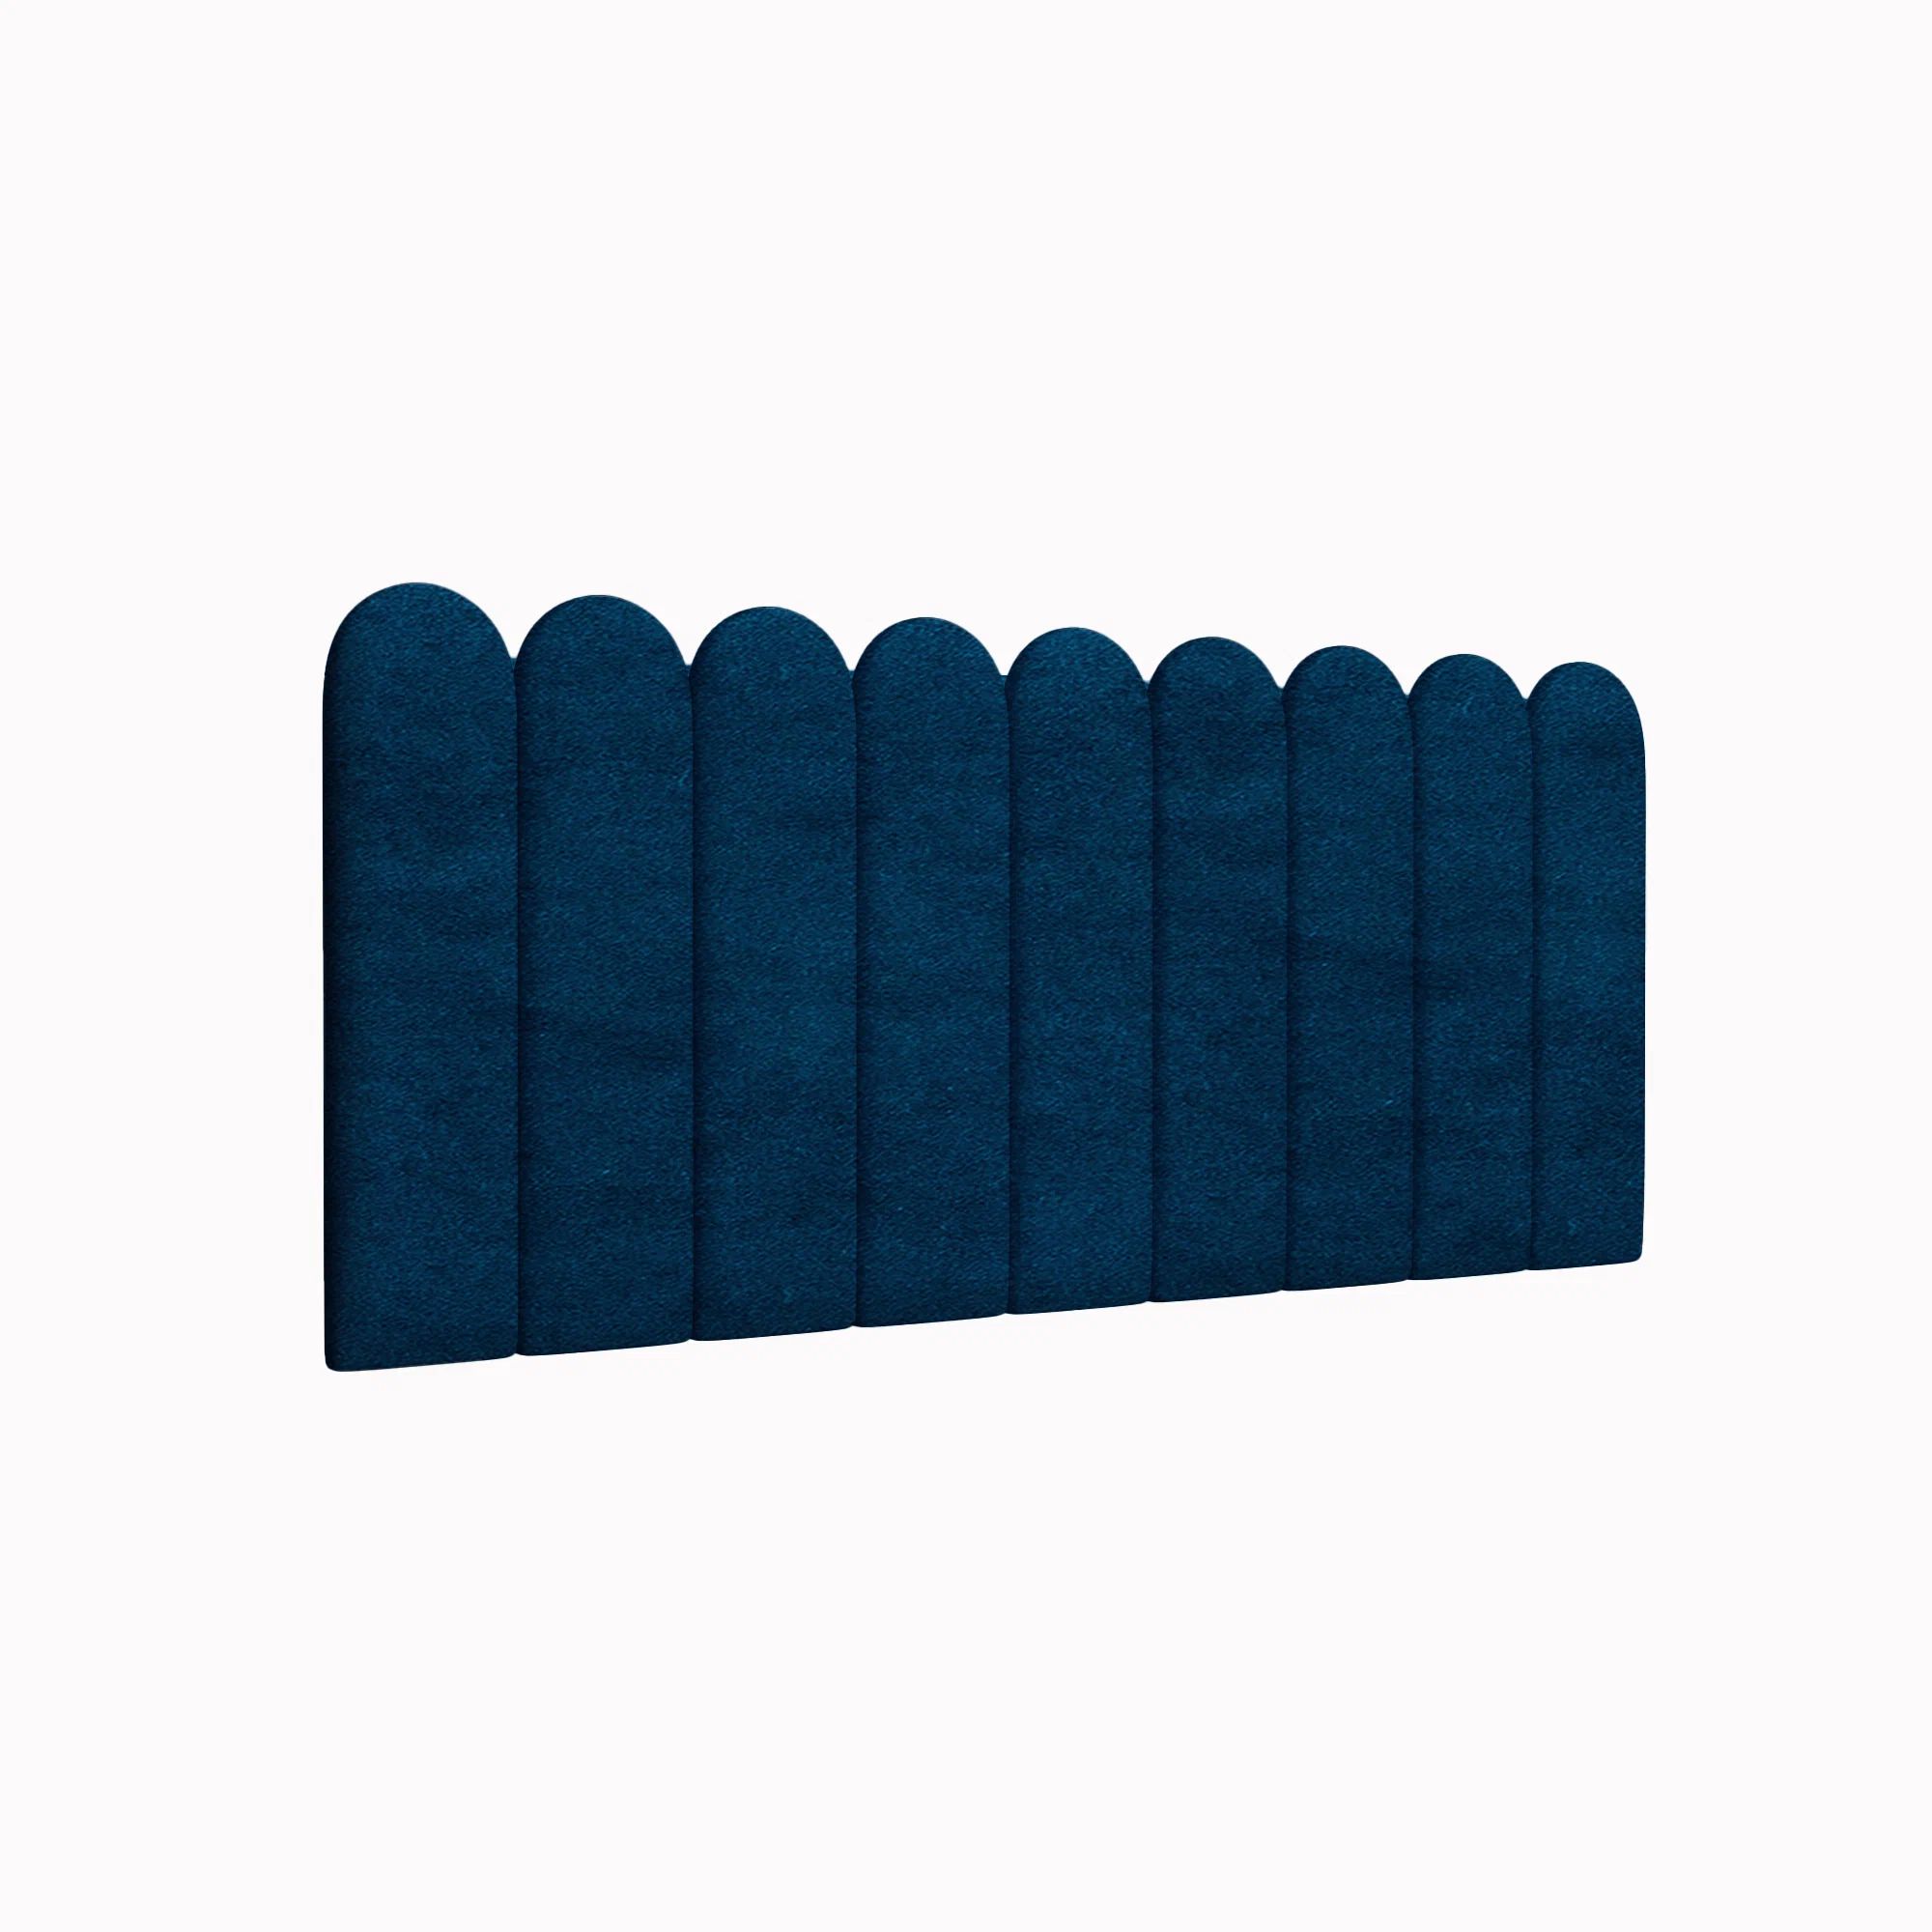 Стеновая панель Velour Blue 15х60R см 4 шт.